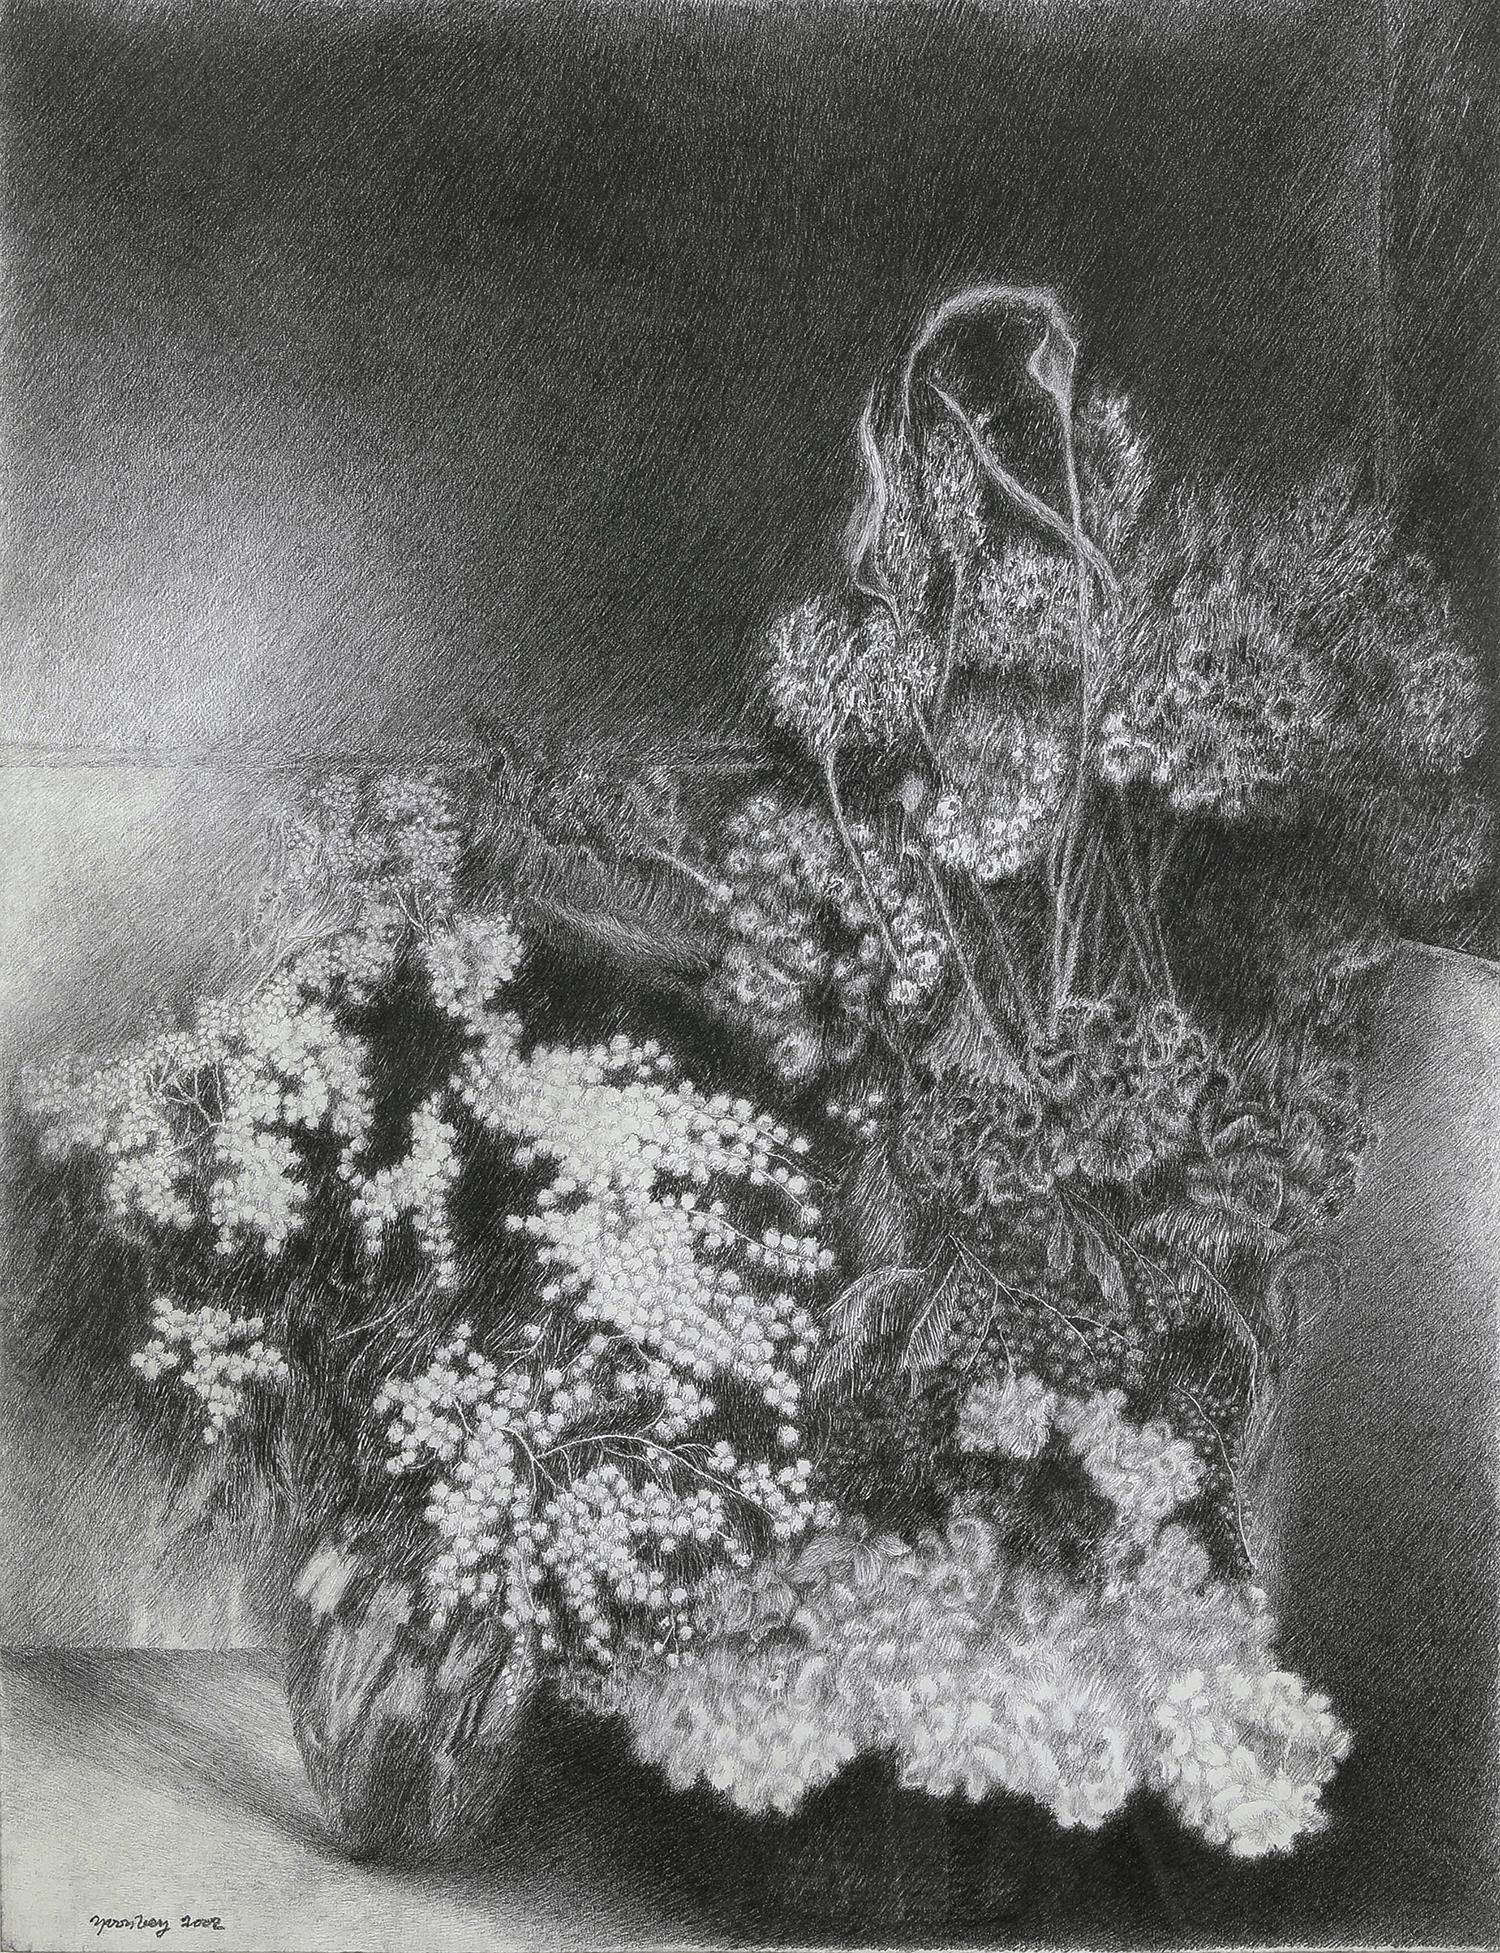 Schwarz-weiße Stillleben-Blumenzeichnung von Mimosas des Künstlers Yvon Pissarro